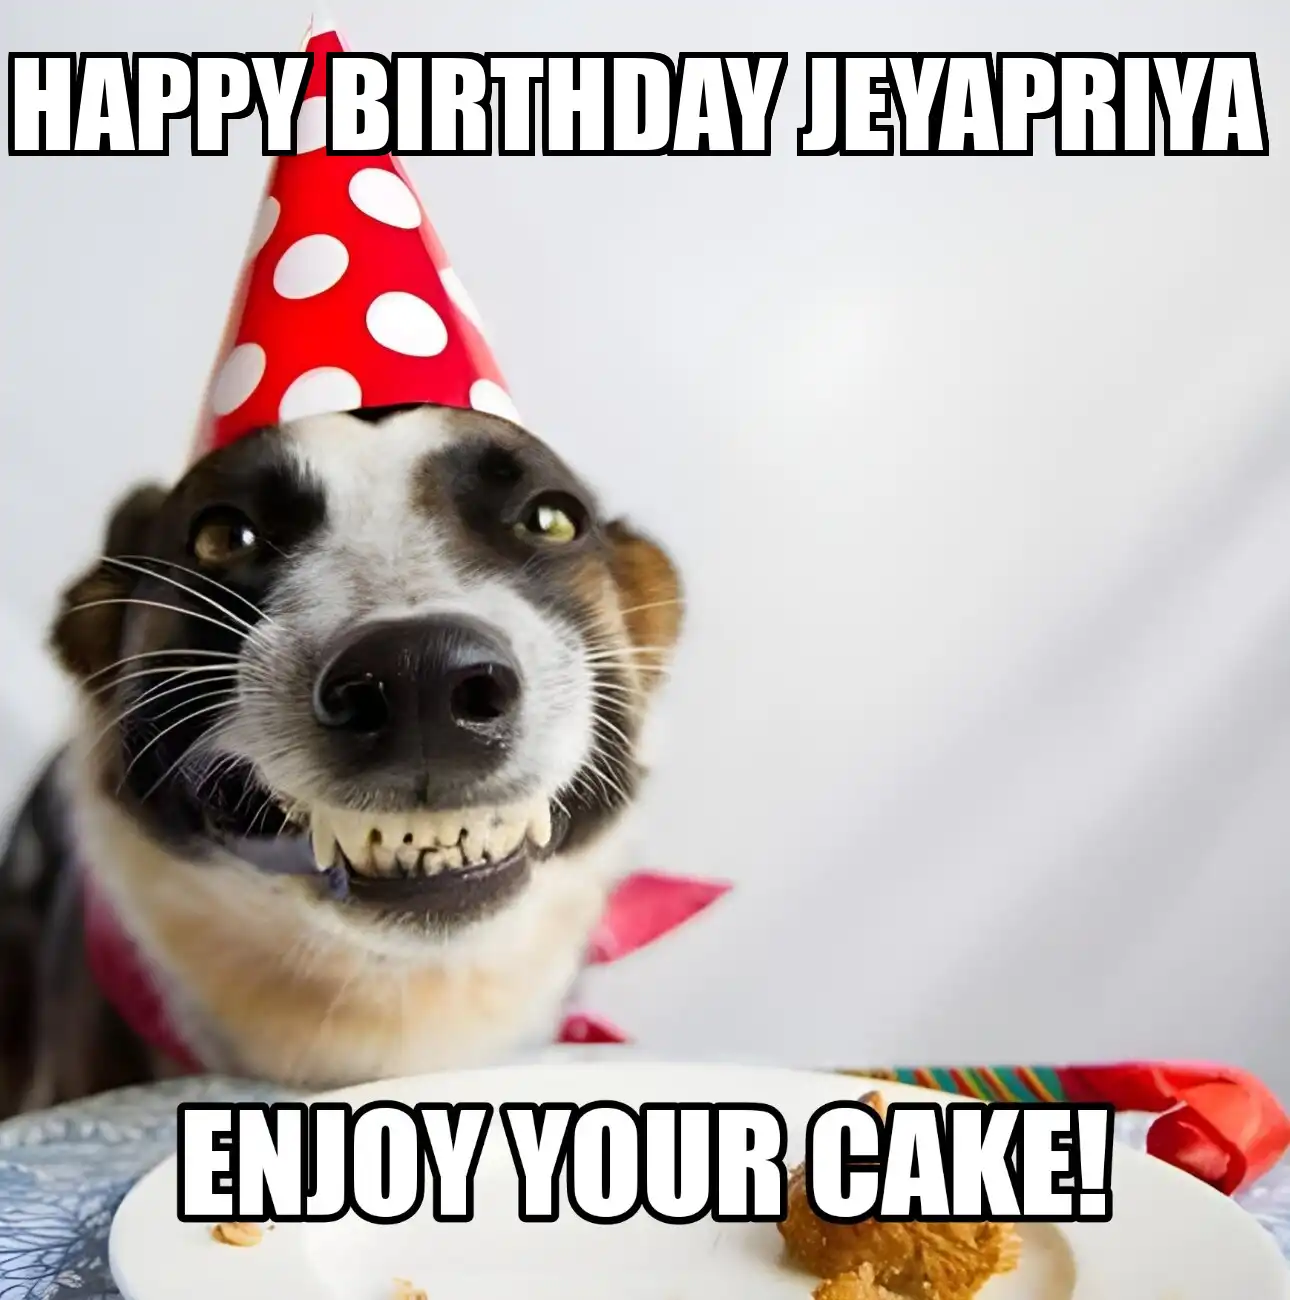 Happy Birthday Jeyapriya Enjoy Your Cake Dog Meme